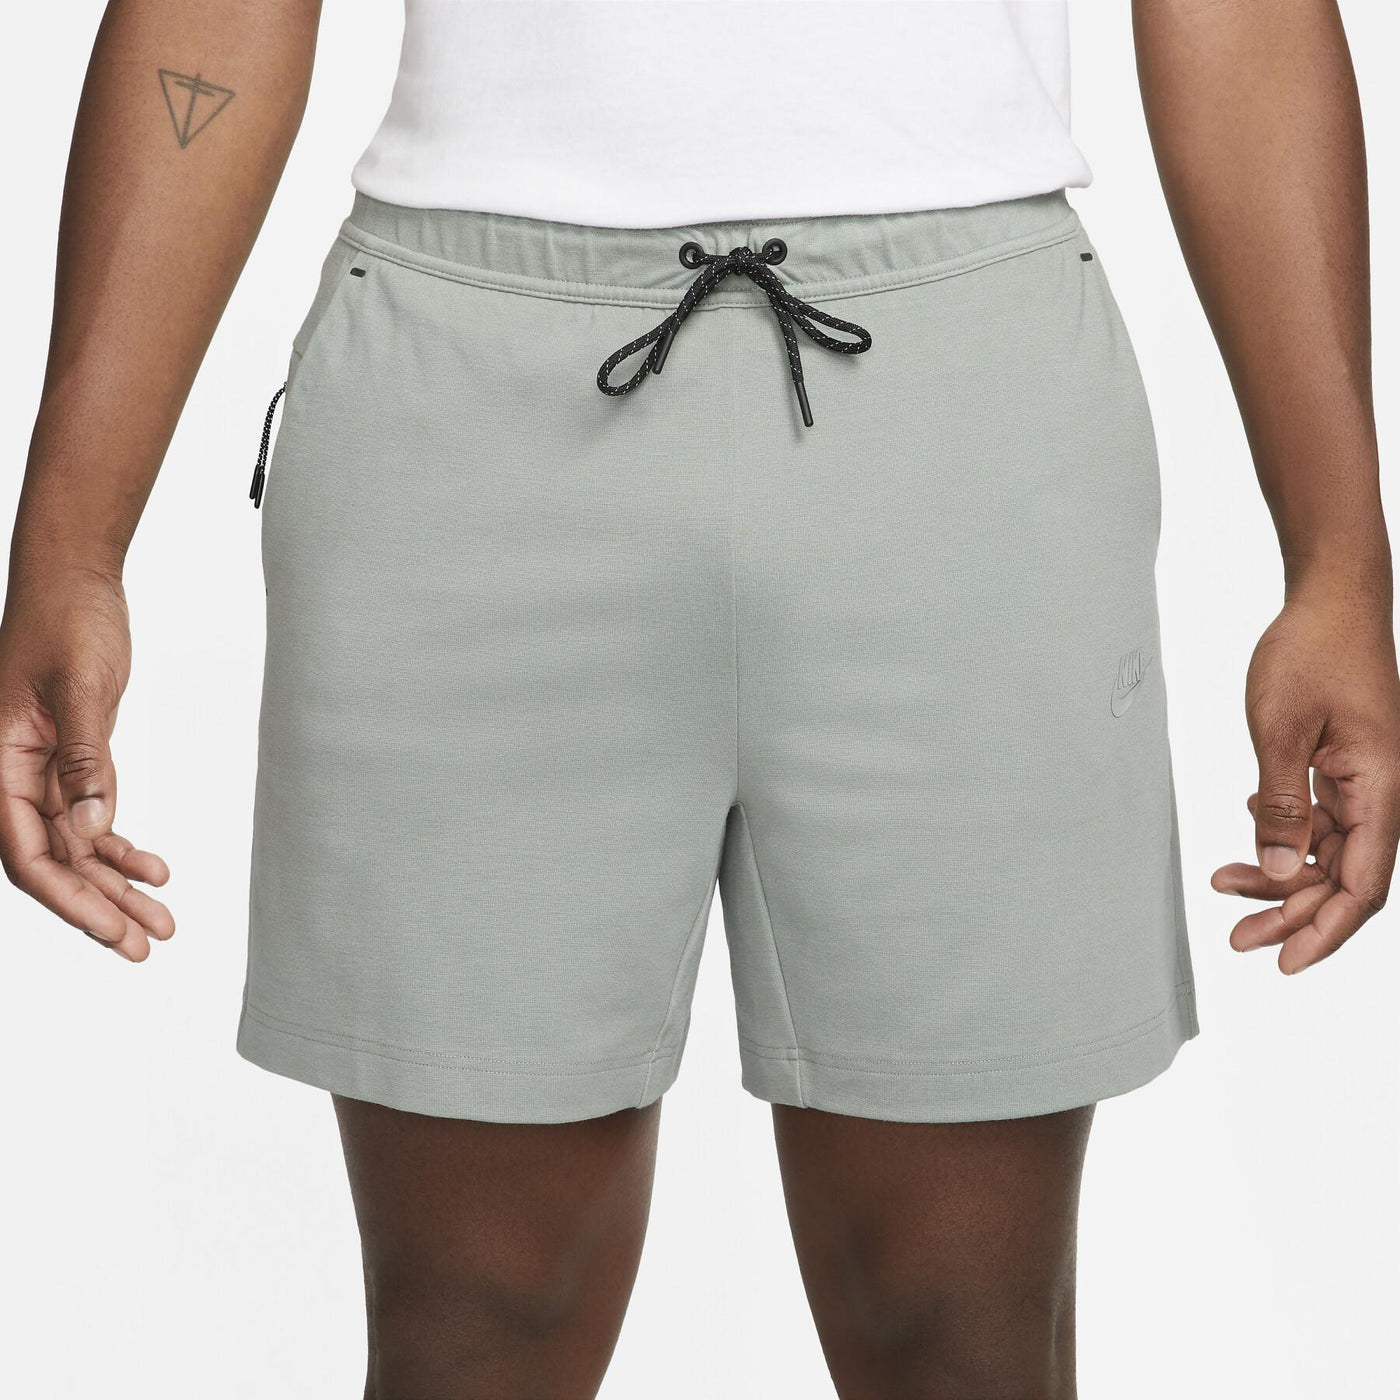 Nike Tech Fleece Lightweight Shorts